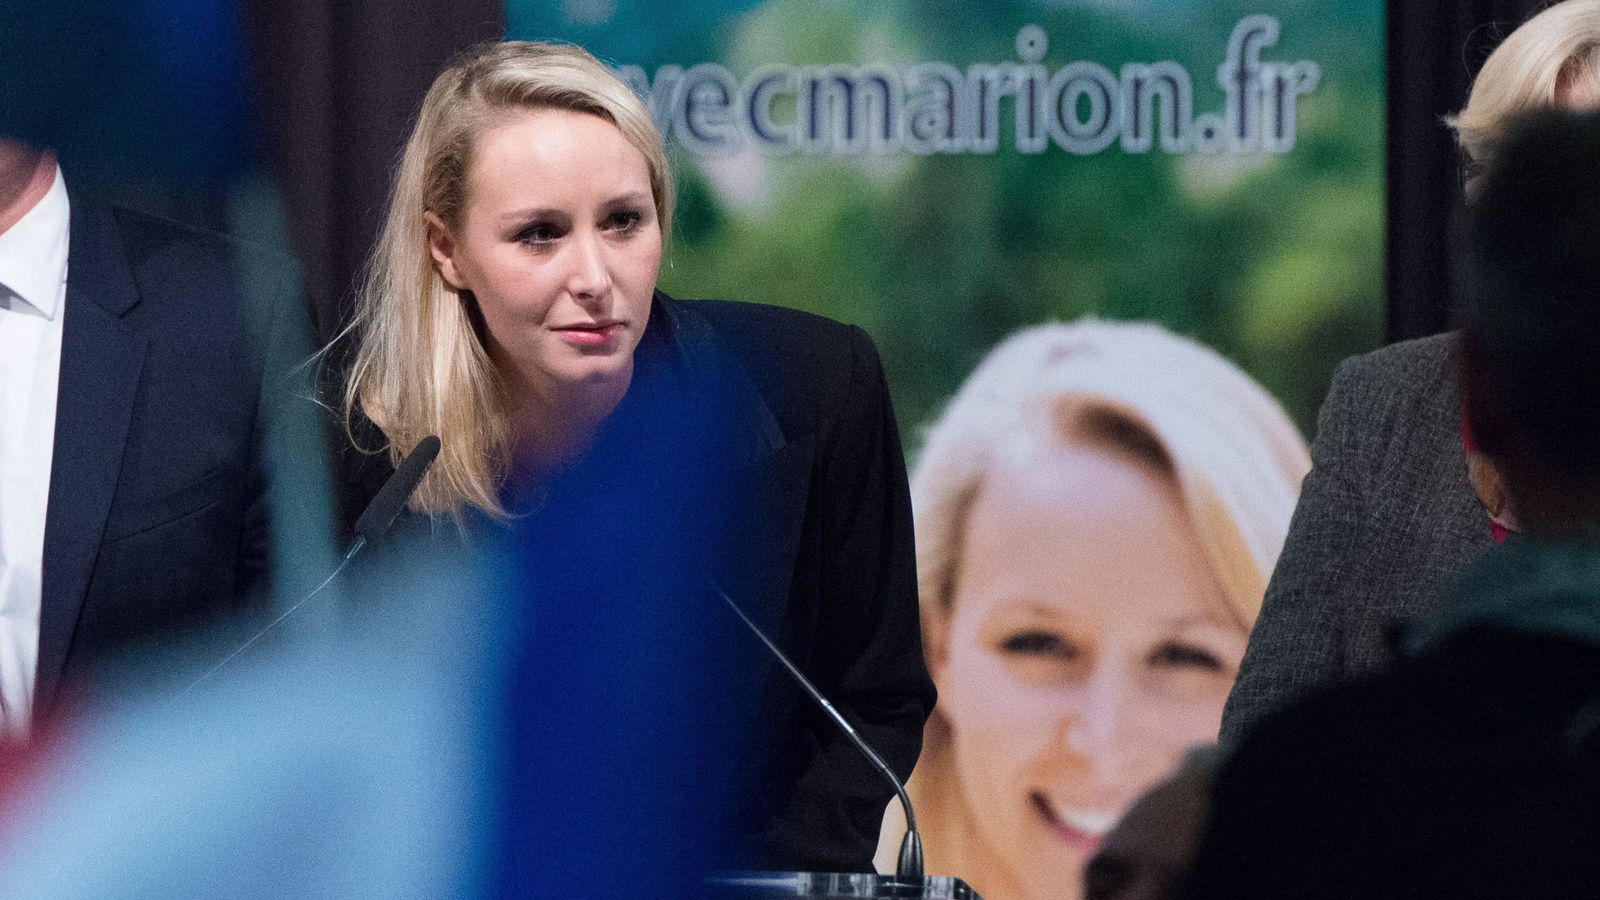 Foto: Marion Marechal Le Pen, candidata del FN y sobrina de Marine Le Pen, valora los resultados. (Reuters)